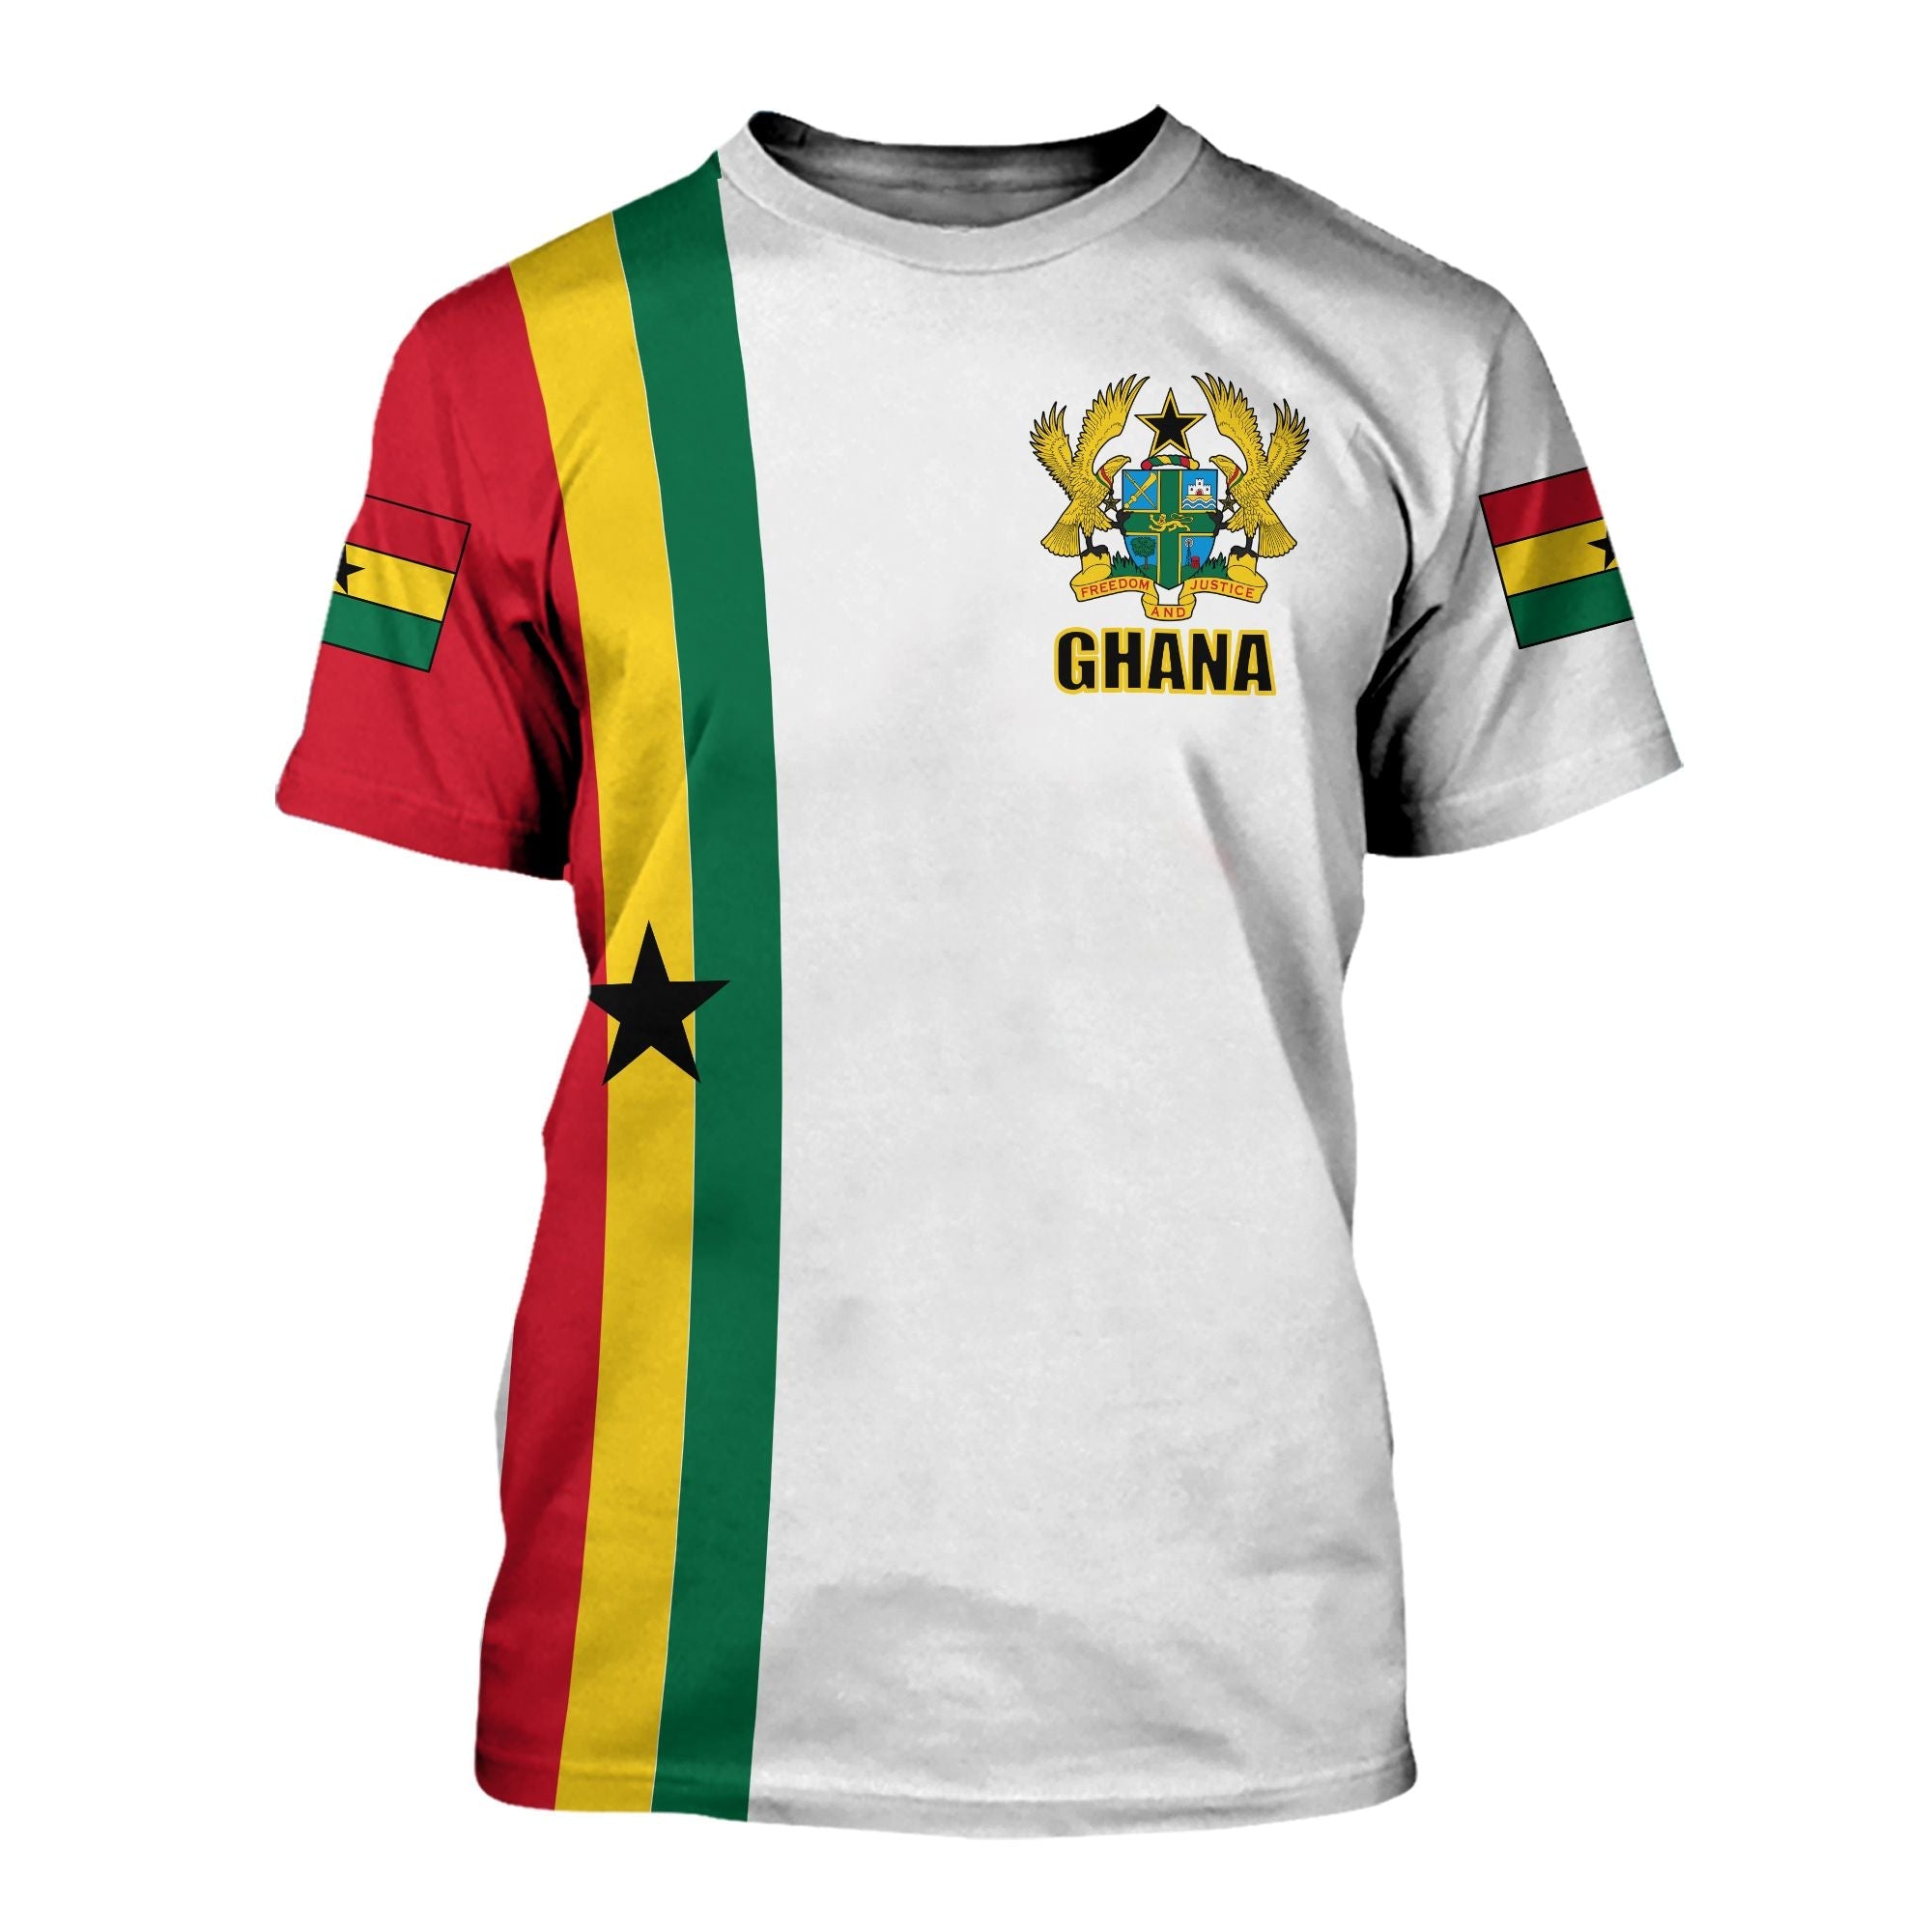 ghana-flag-t-shirt-ver1-white